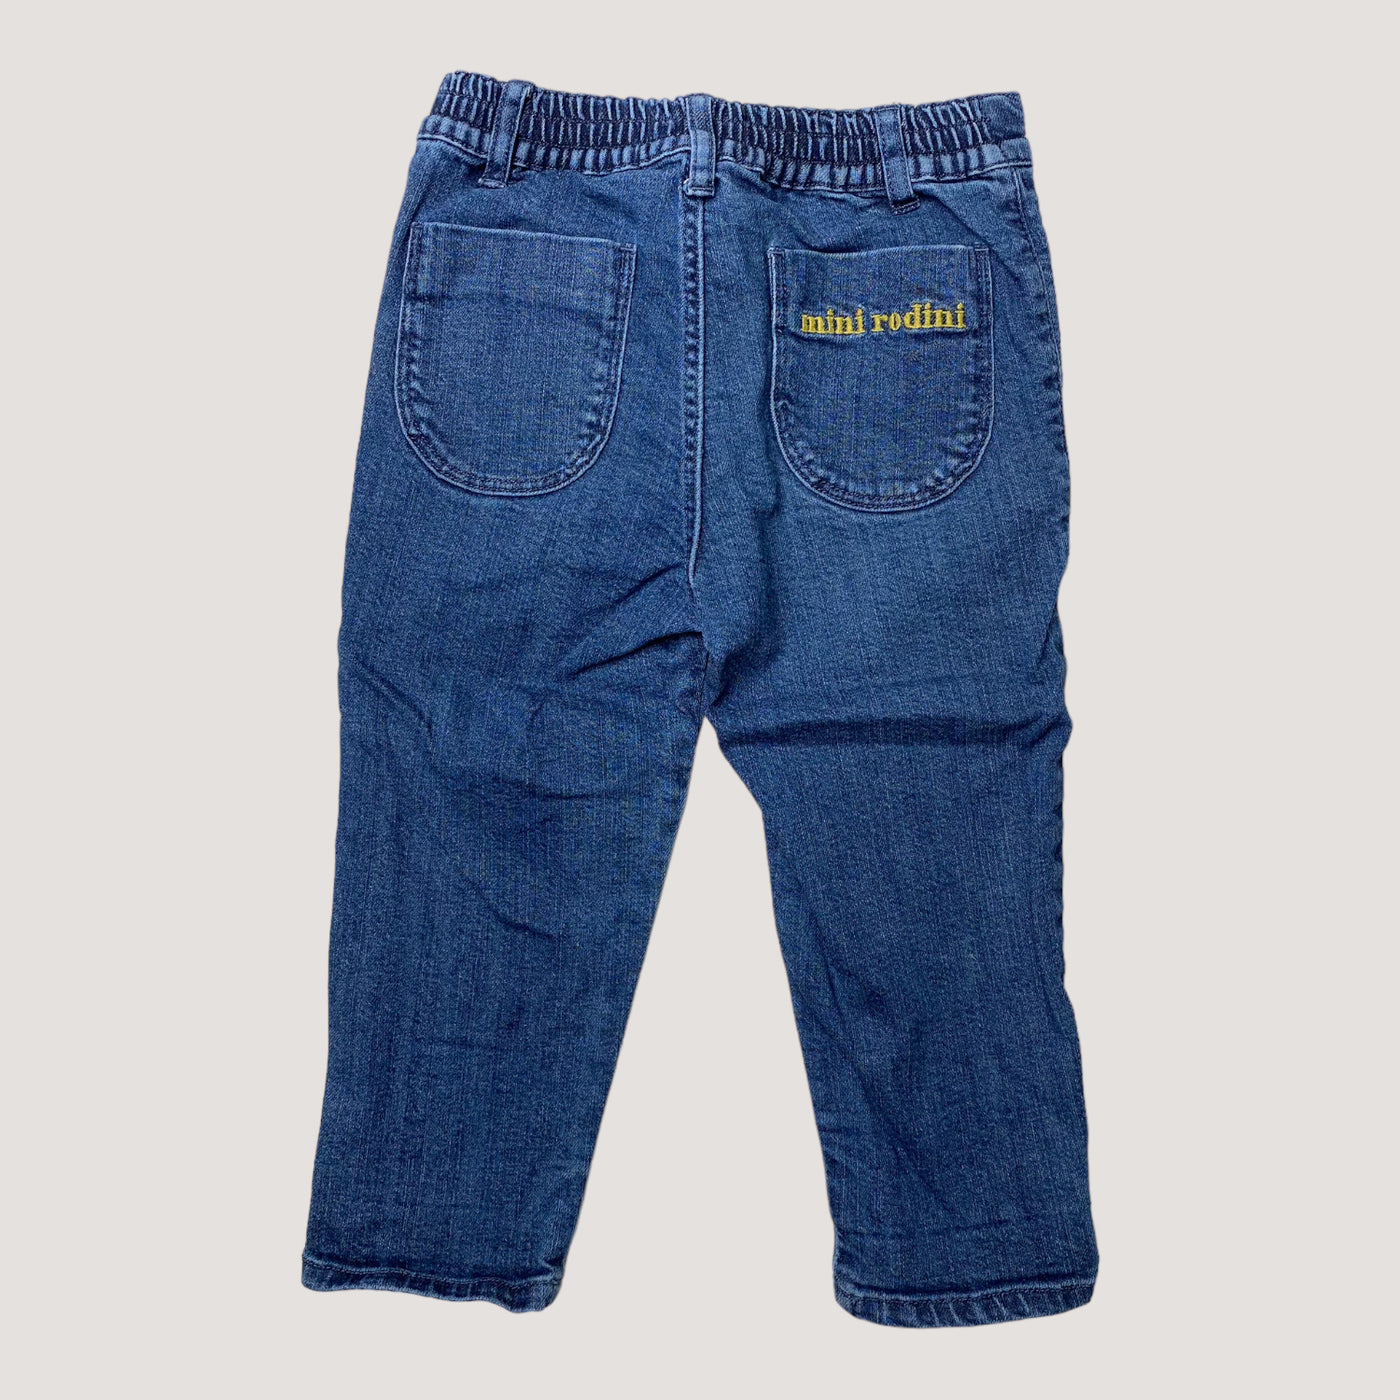 Mini Rodini cotton jeans, royal blue | 80/86cm